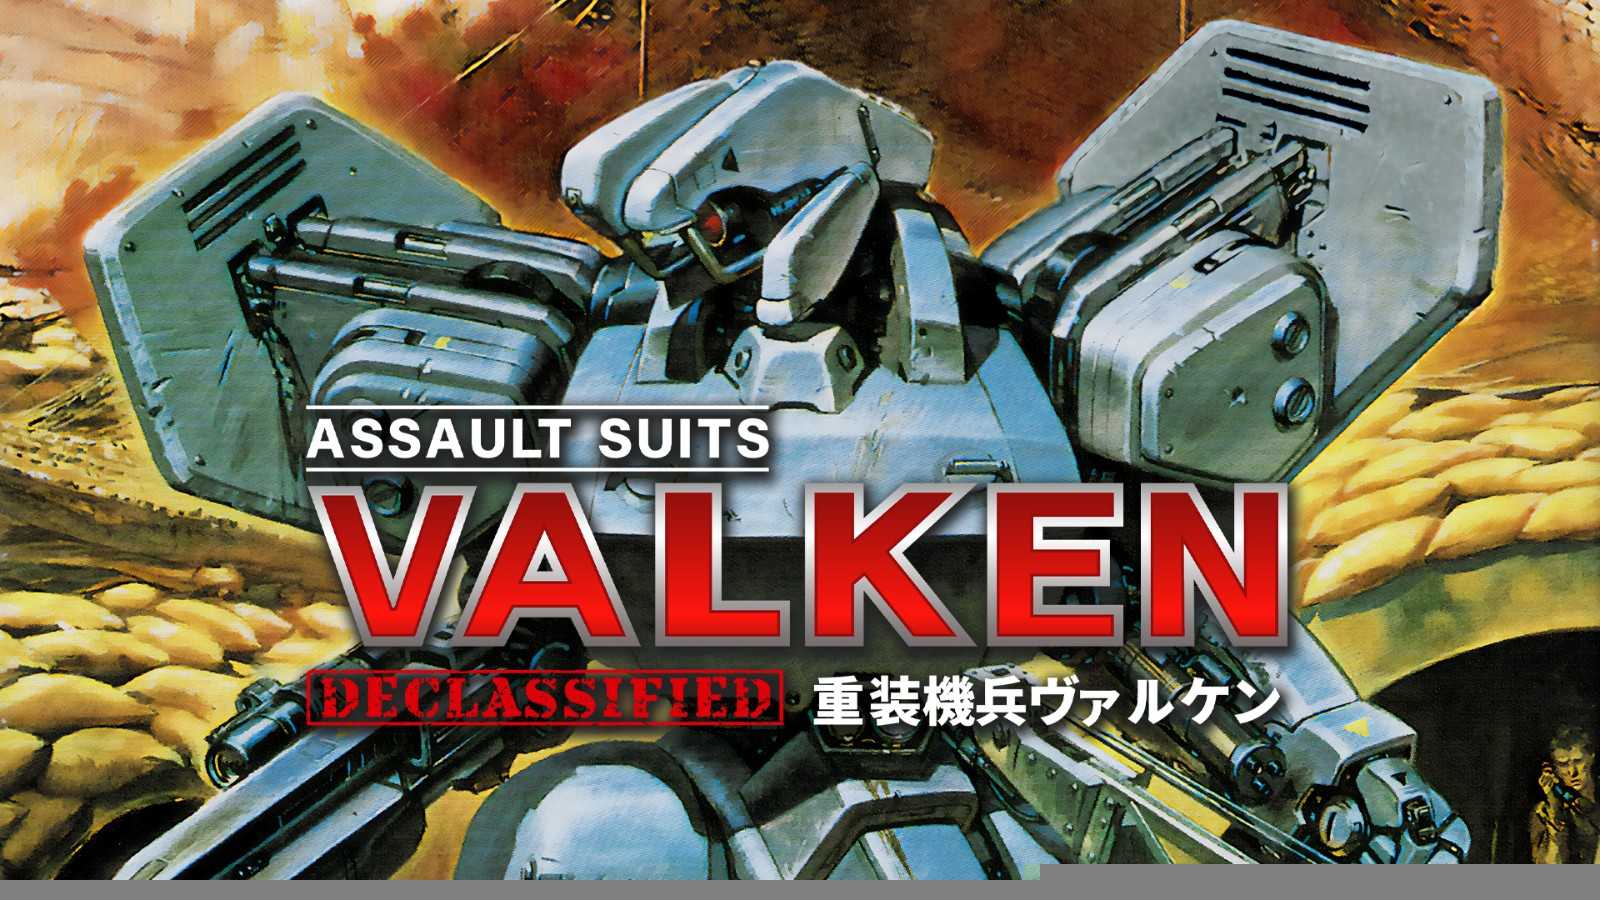 经典机器人动作射击游戏《重装机兵瓦尔肯》 3月20日登录任天堂Switch